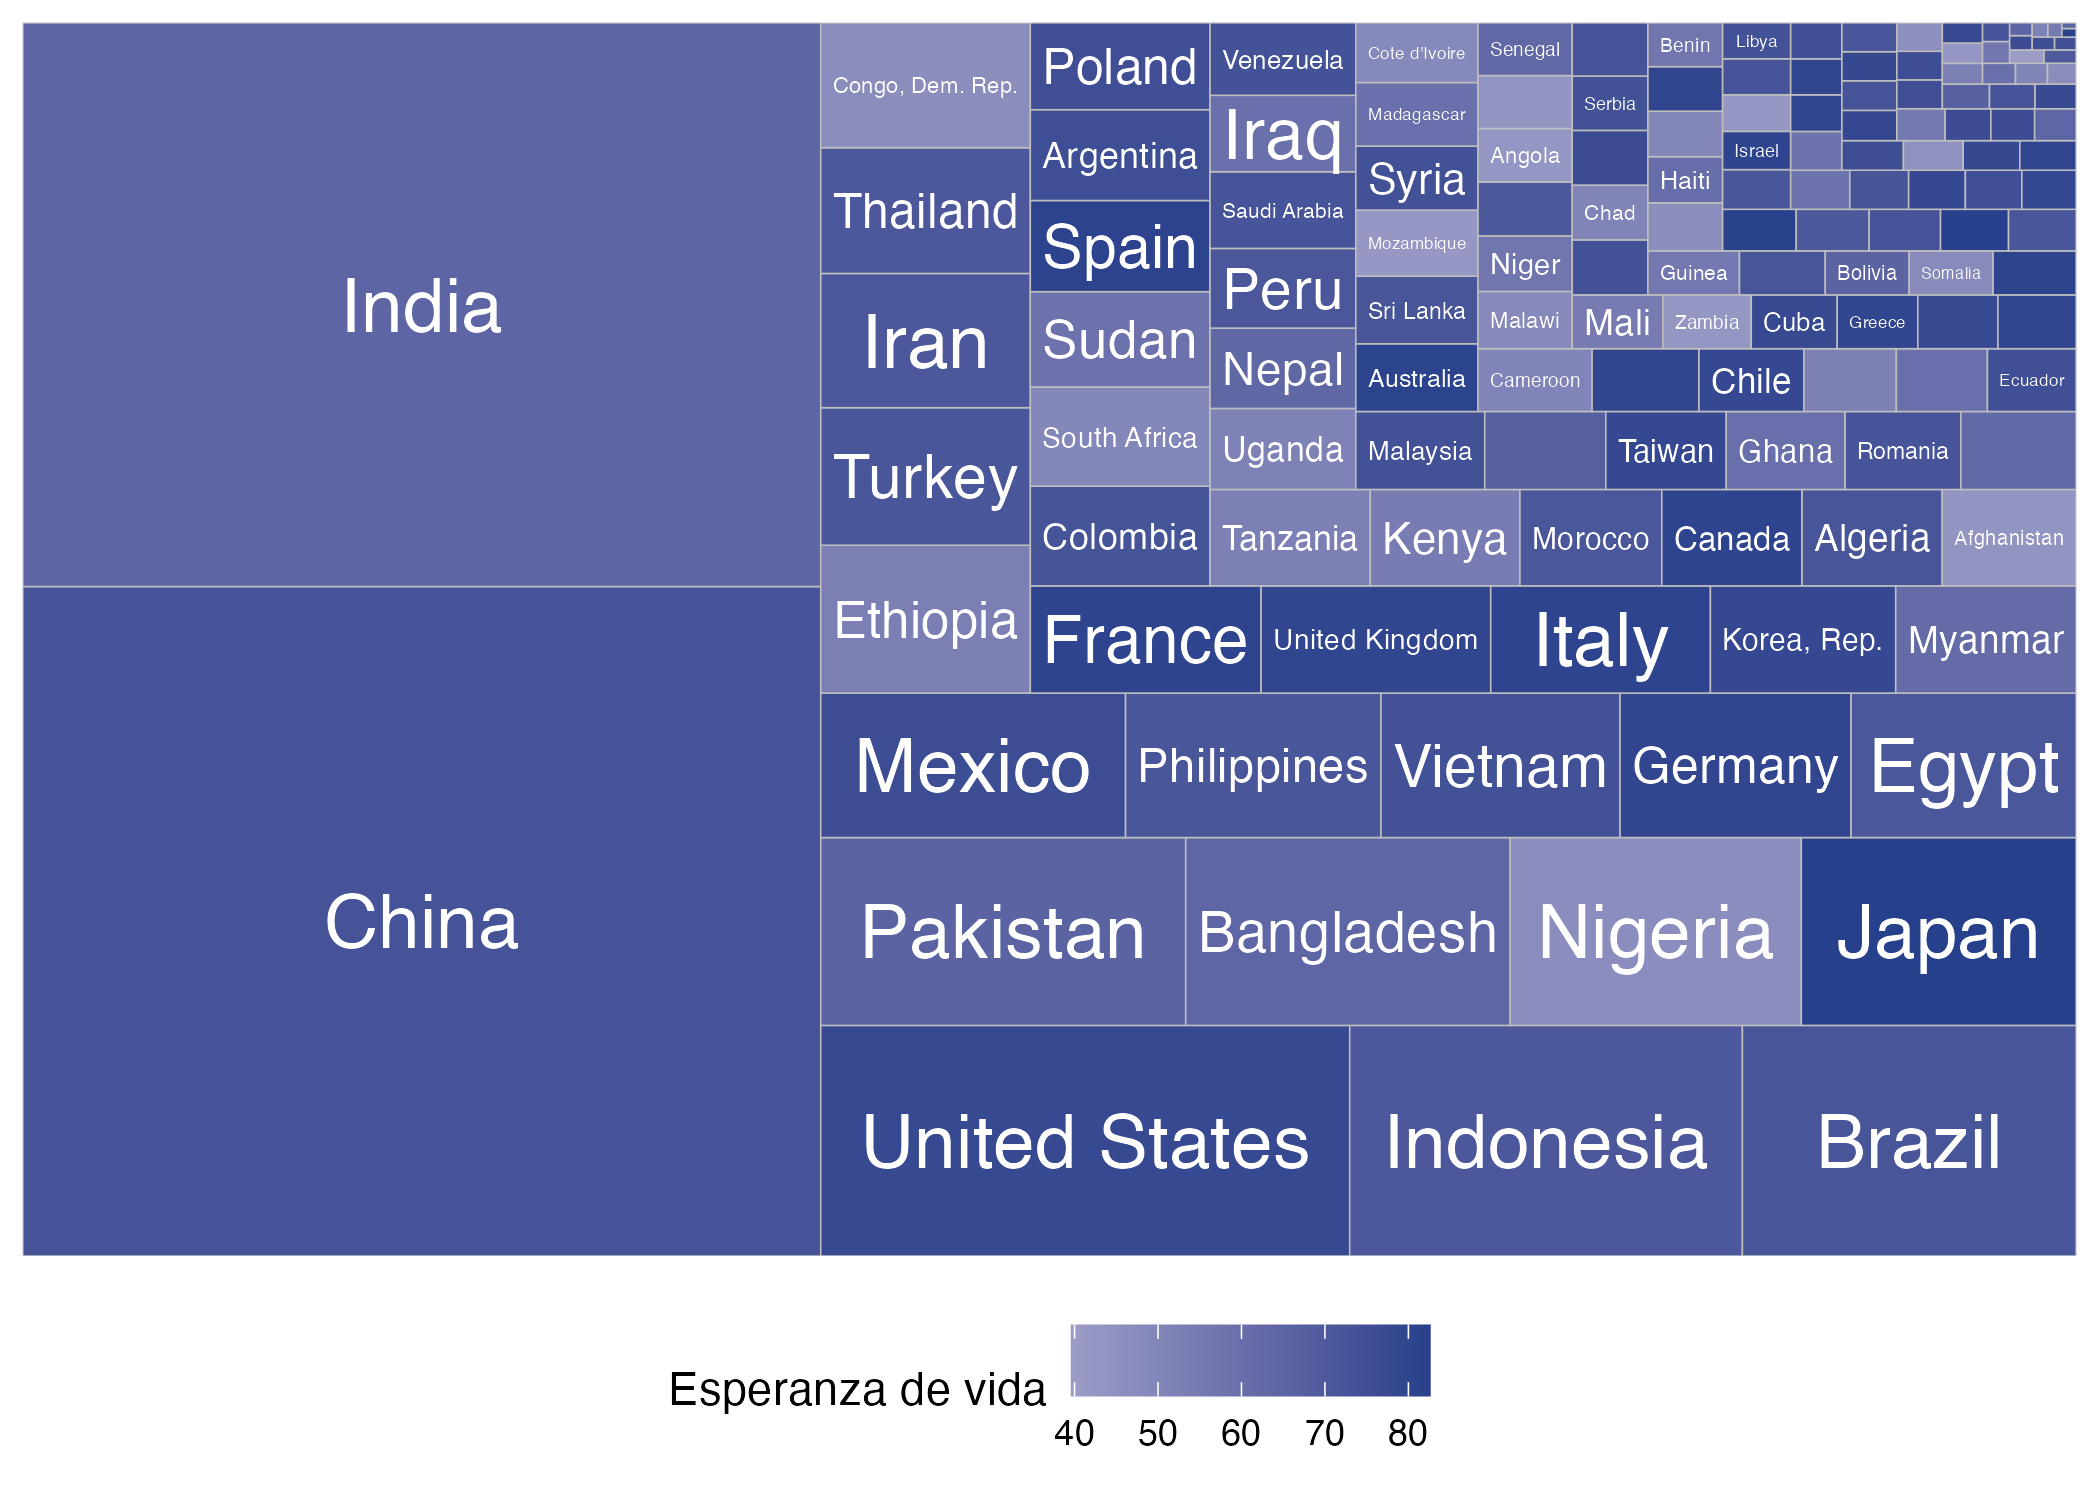 Composición y esperanza de vida por país para el año 2007